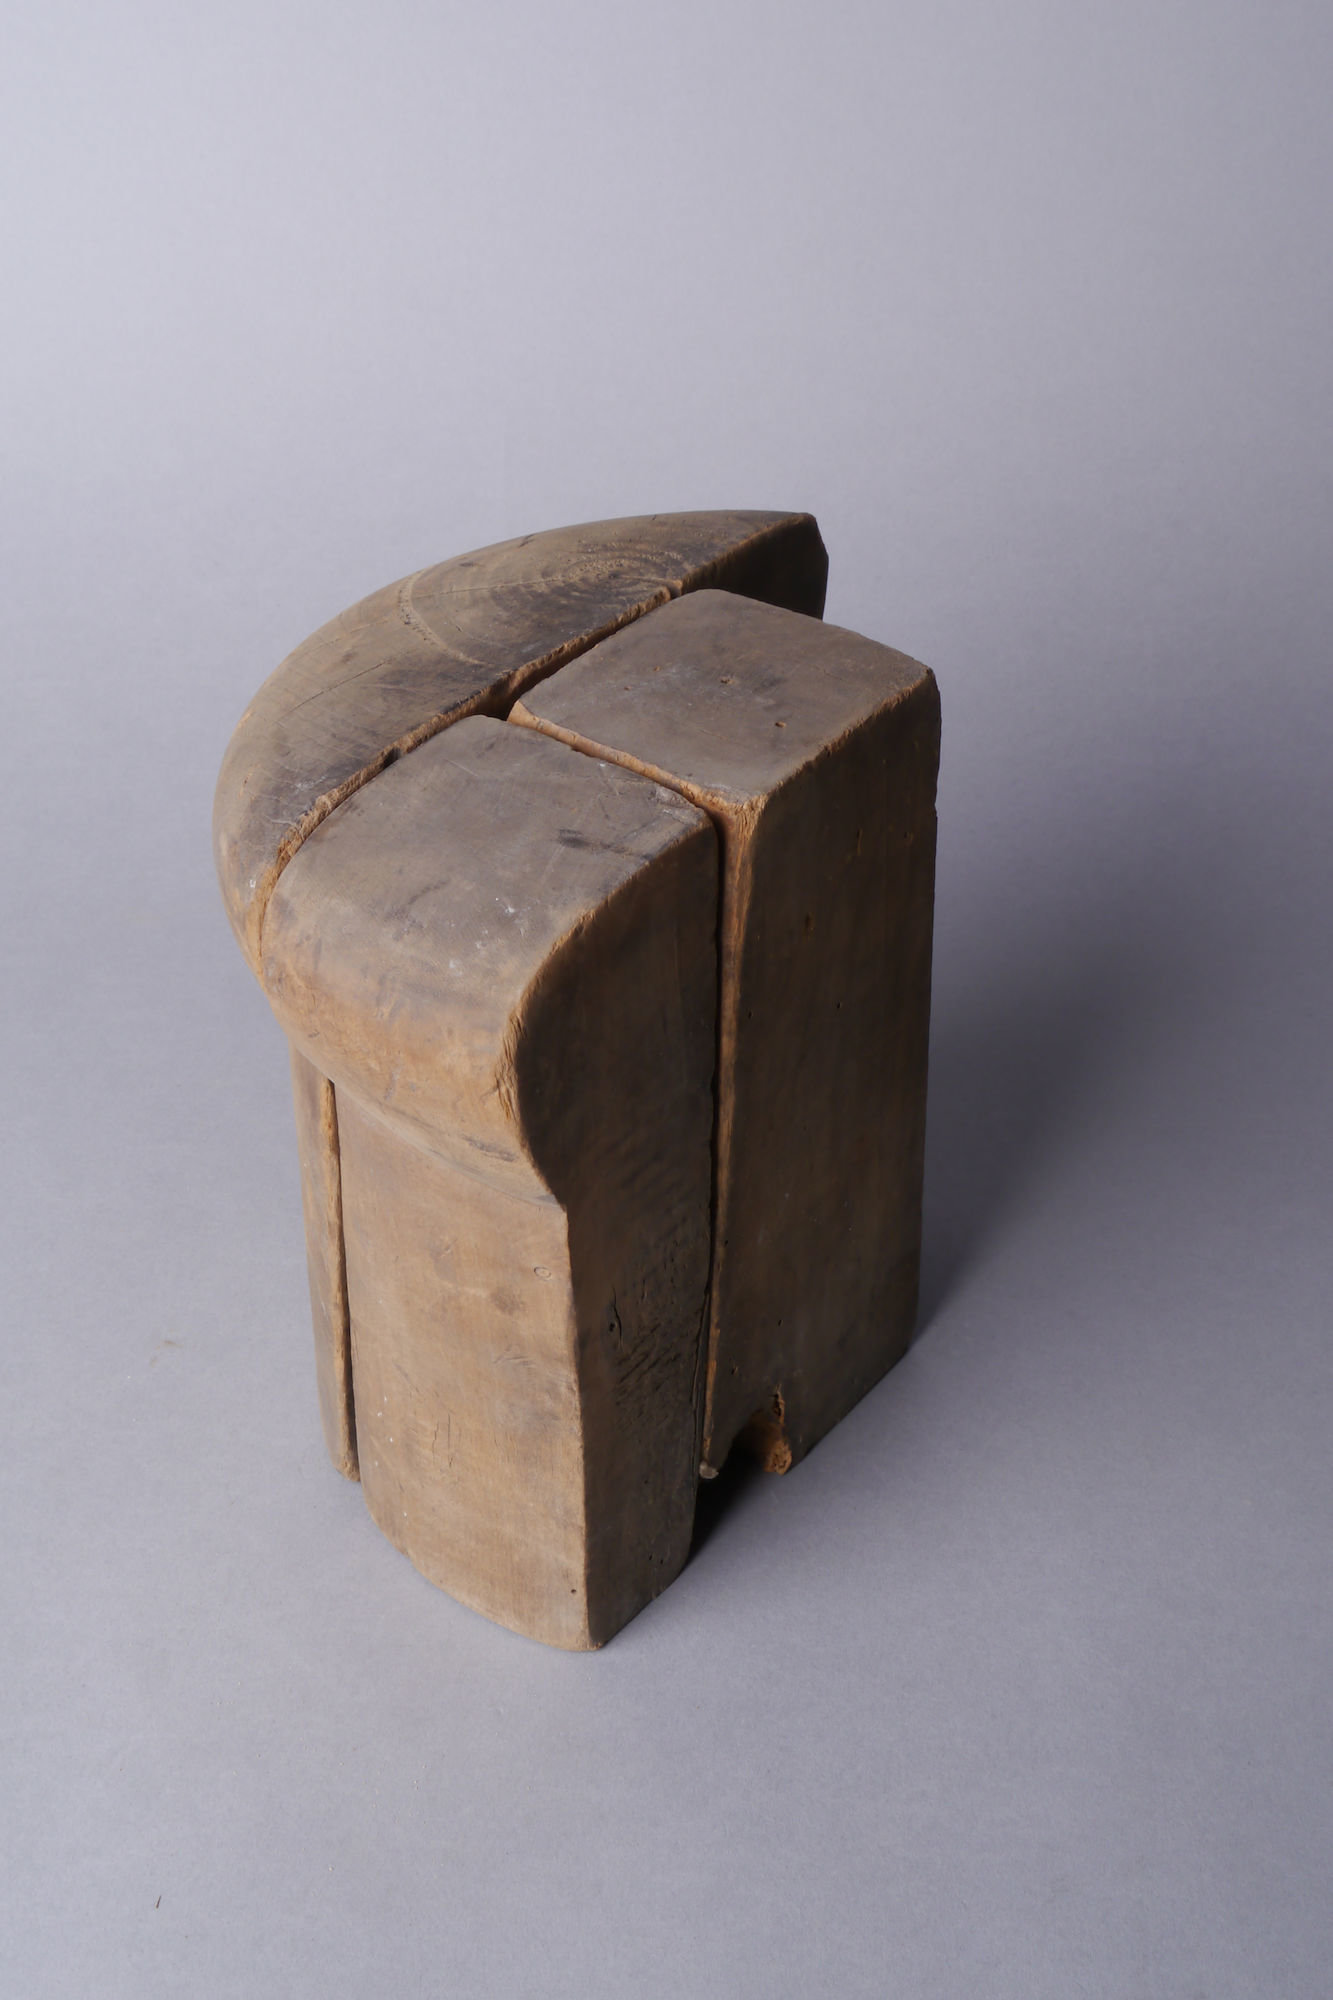 Onderdelen van een houten mal of vorm voor hoeden